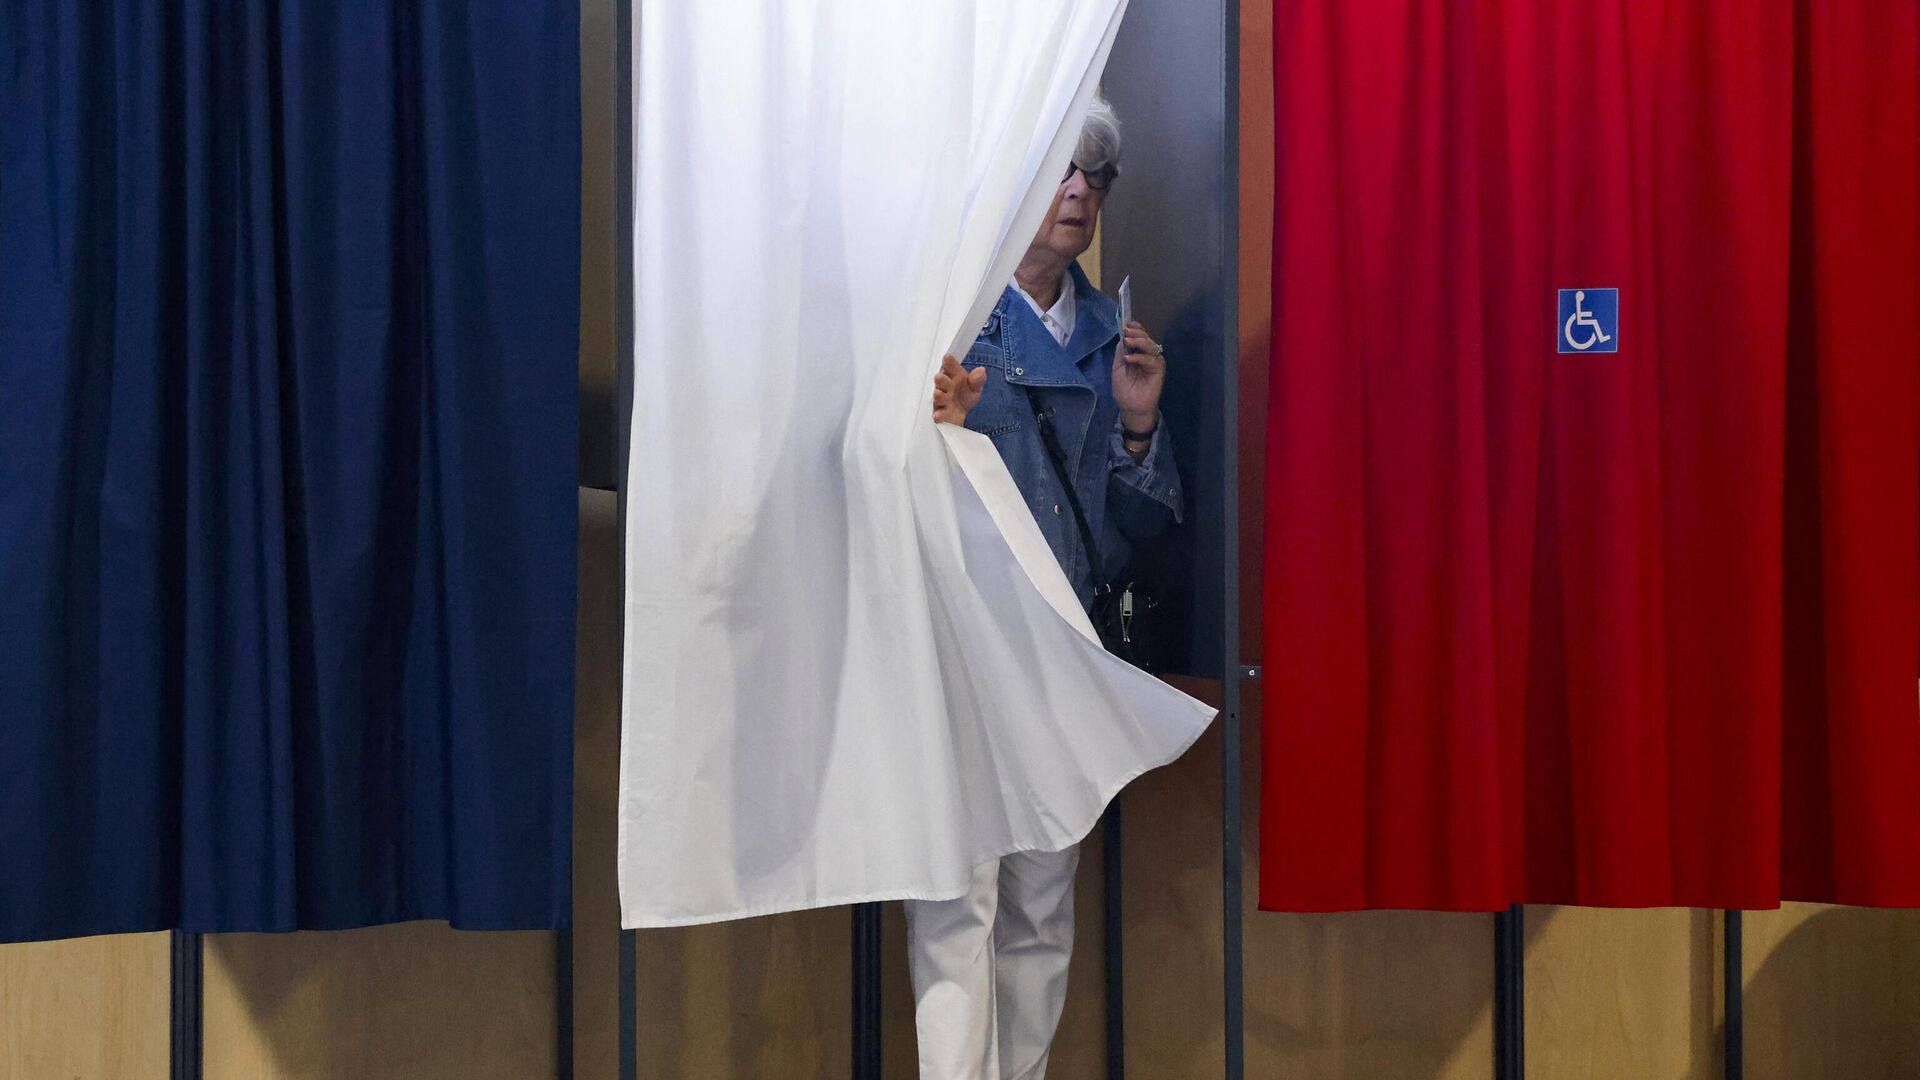 Ֆրանսիայի անդրծովյան տարածքներում մեկնարկել է երկրի խորհրդարանի ընտրության երկրորդ փուլը